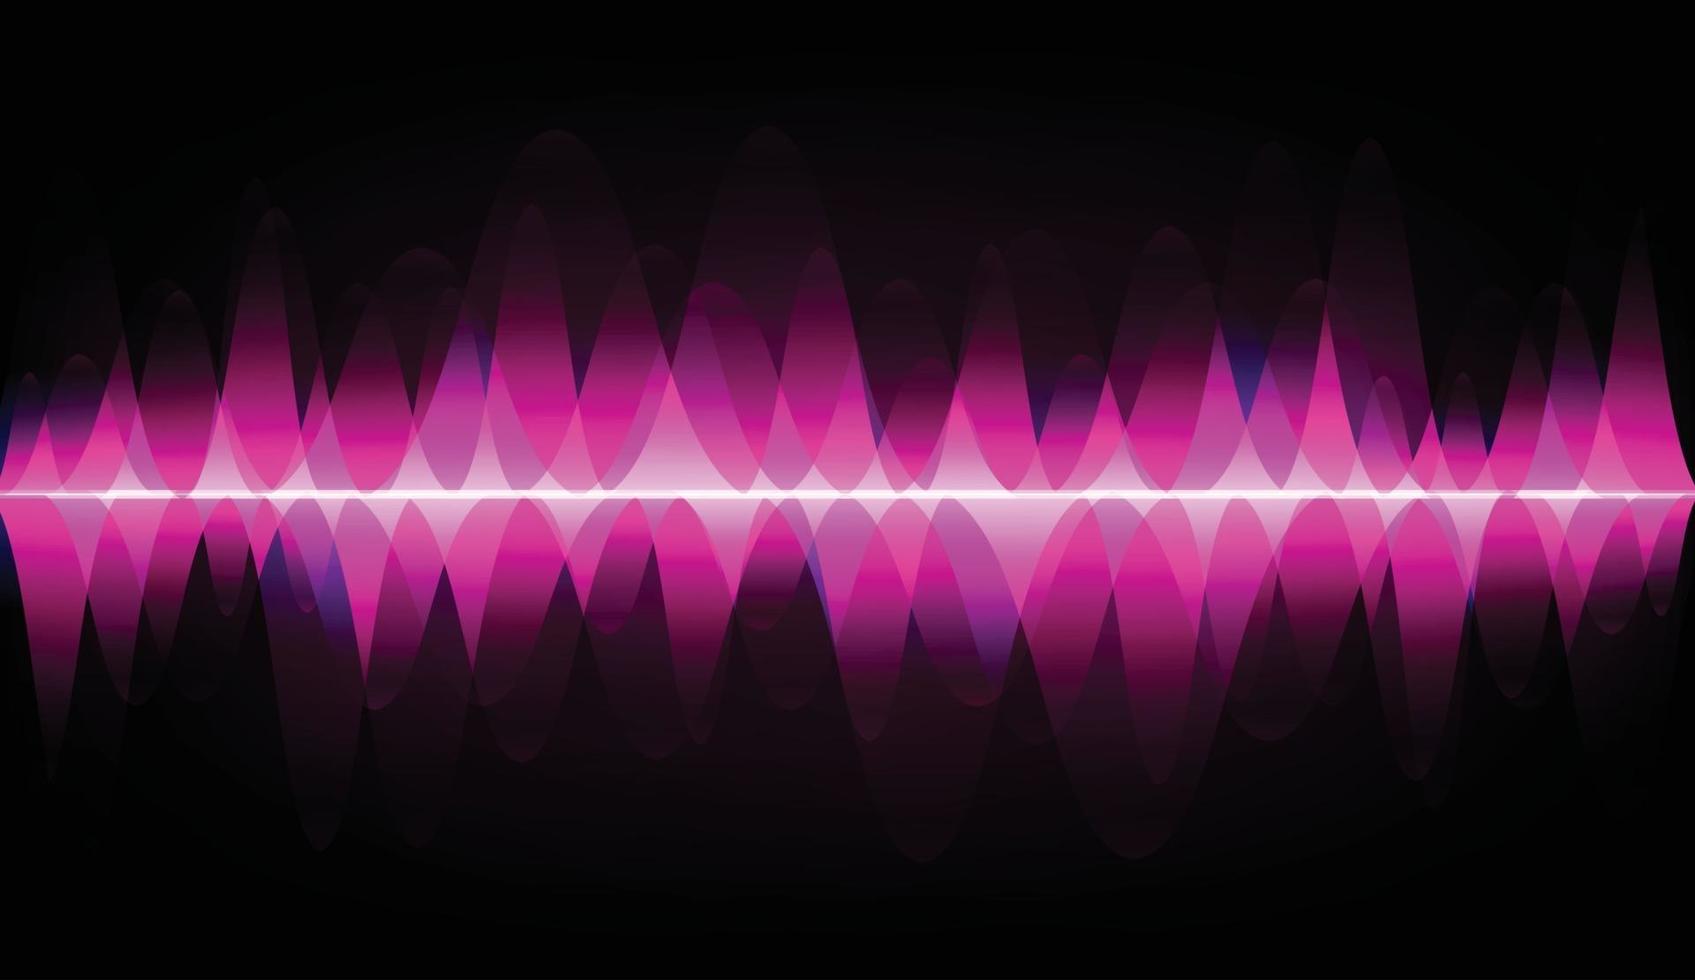 ljudvågor oscillerande mörkt ljus vektor